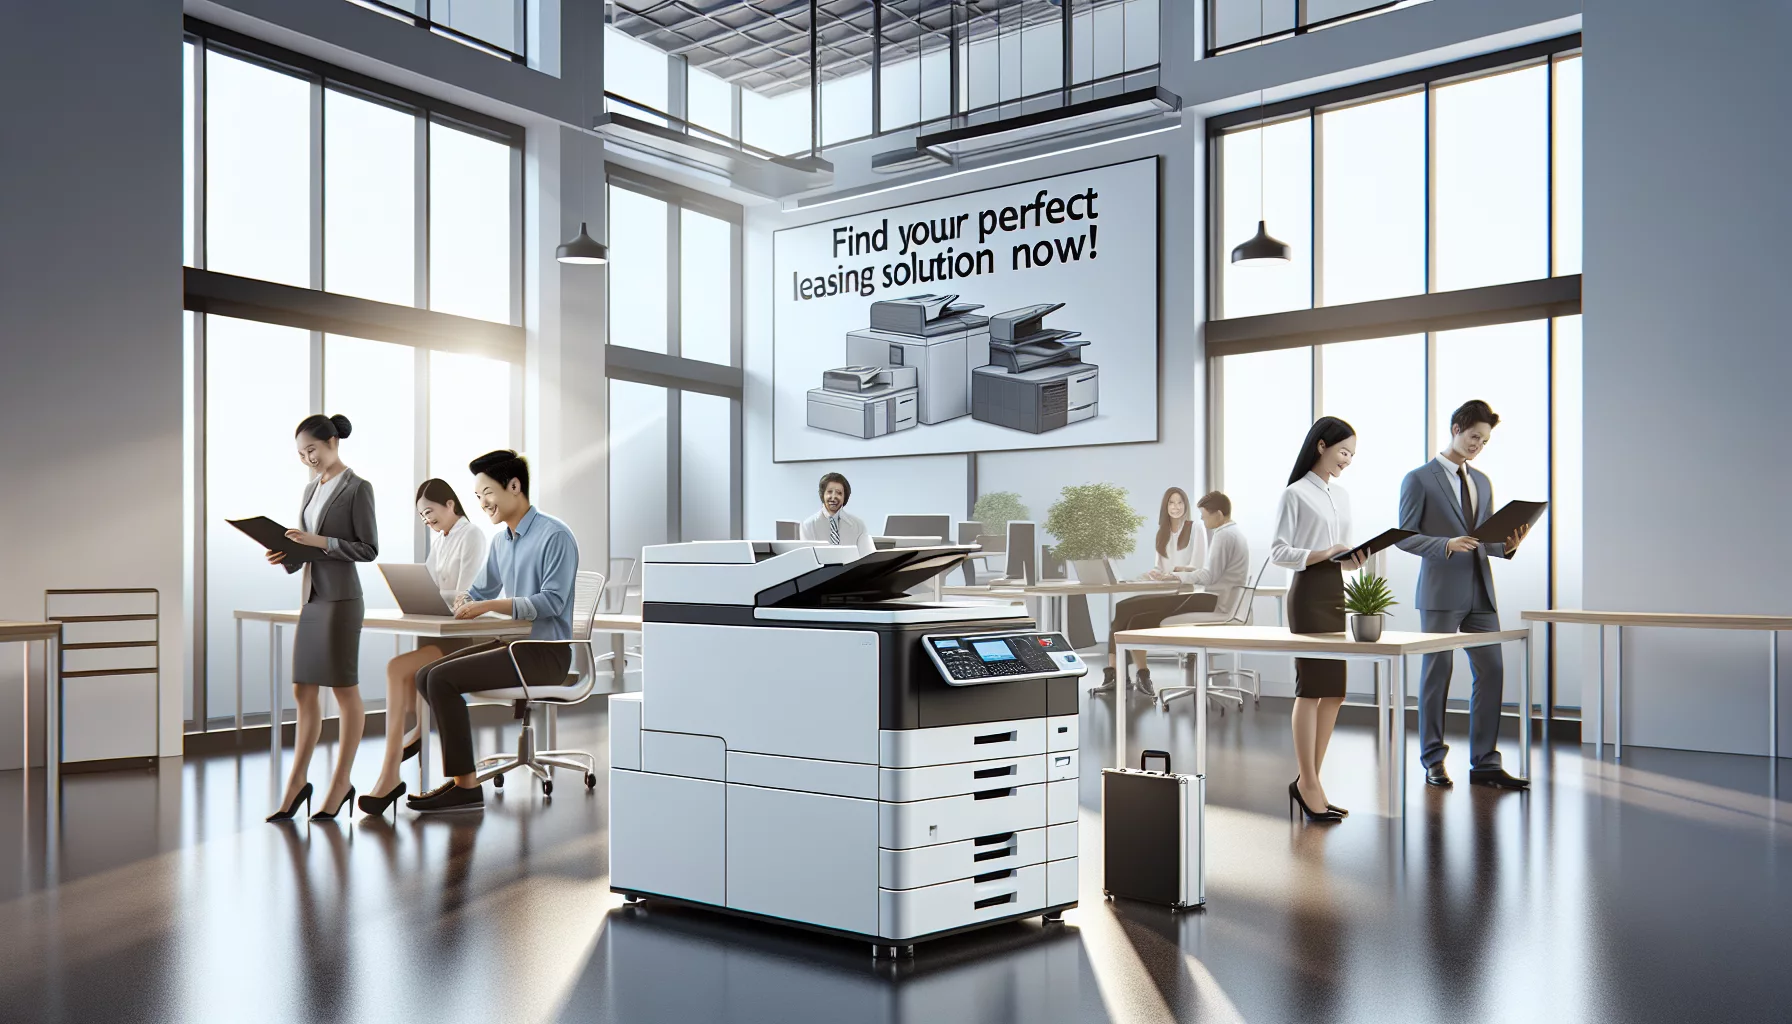 découvrez le meilleur choix de leasing de photocopieurs pour votre entreprise avec nos conseils avisés.